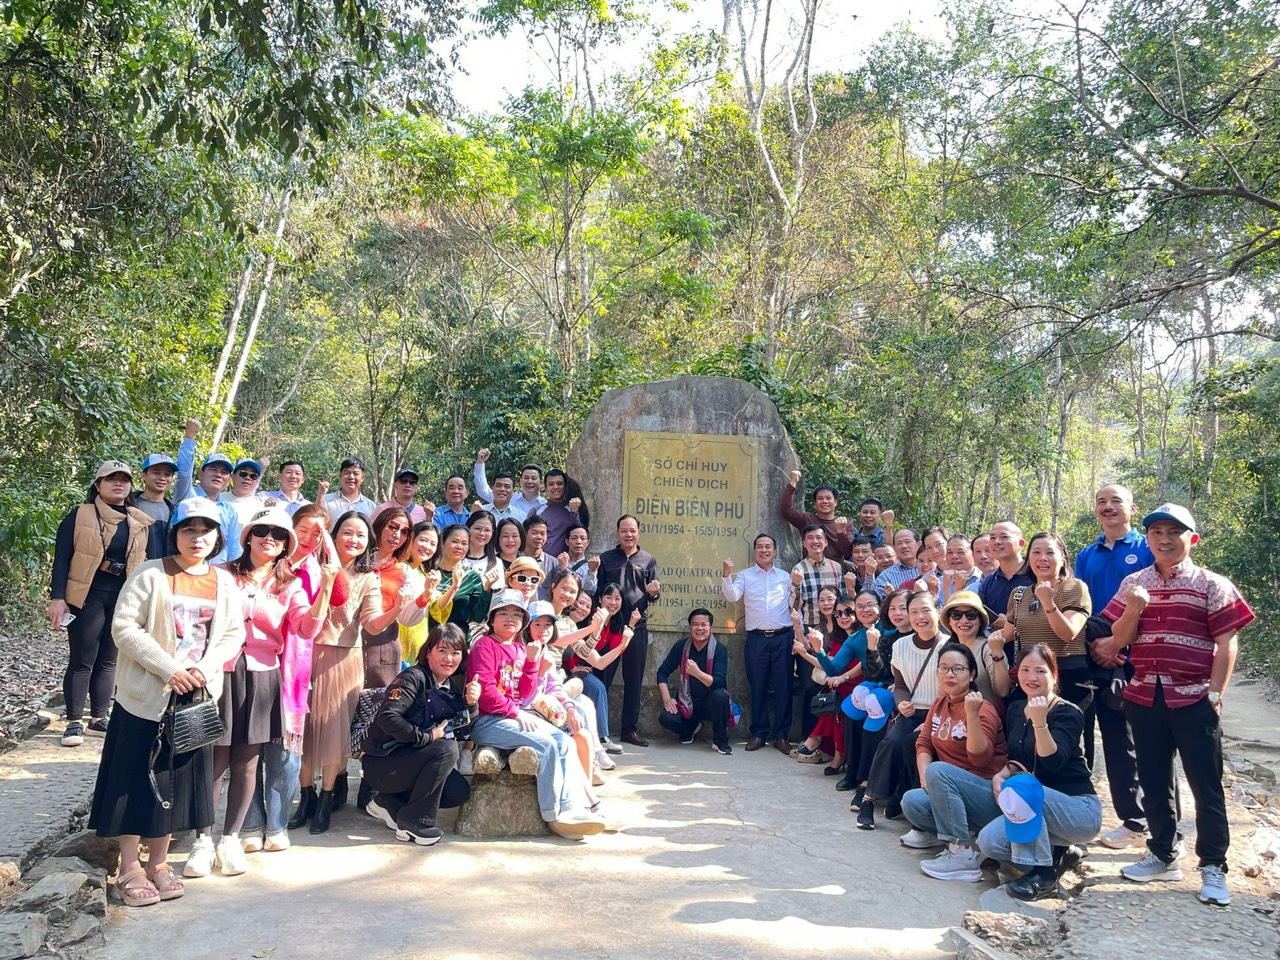 Hành trình về nguồn và tham quan học tập kinh nghiệm của Trường Cao đẳng Việt – Đức Nghệ An tại các tỉnh Sơn La, Điện Biên